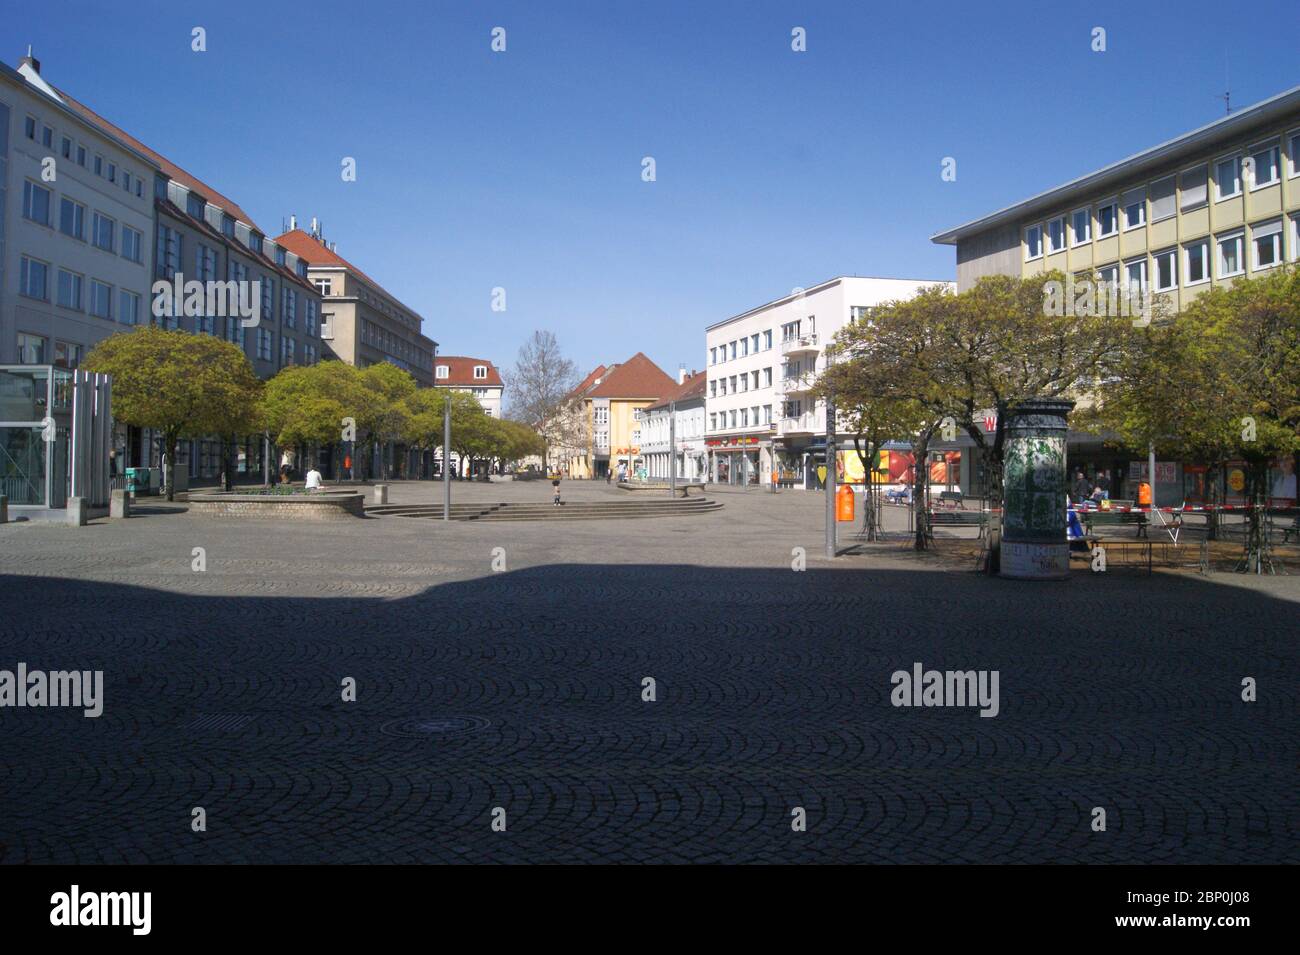 Der Markt in der Altstadt Spandau. Foto Stock